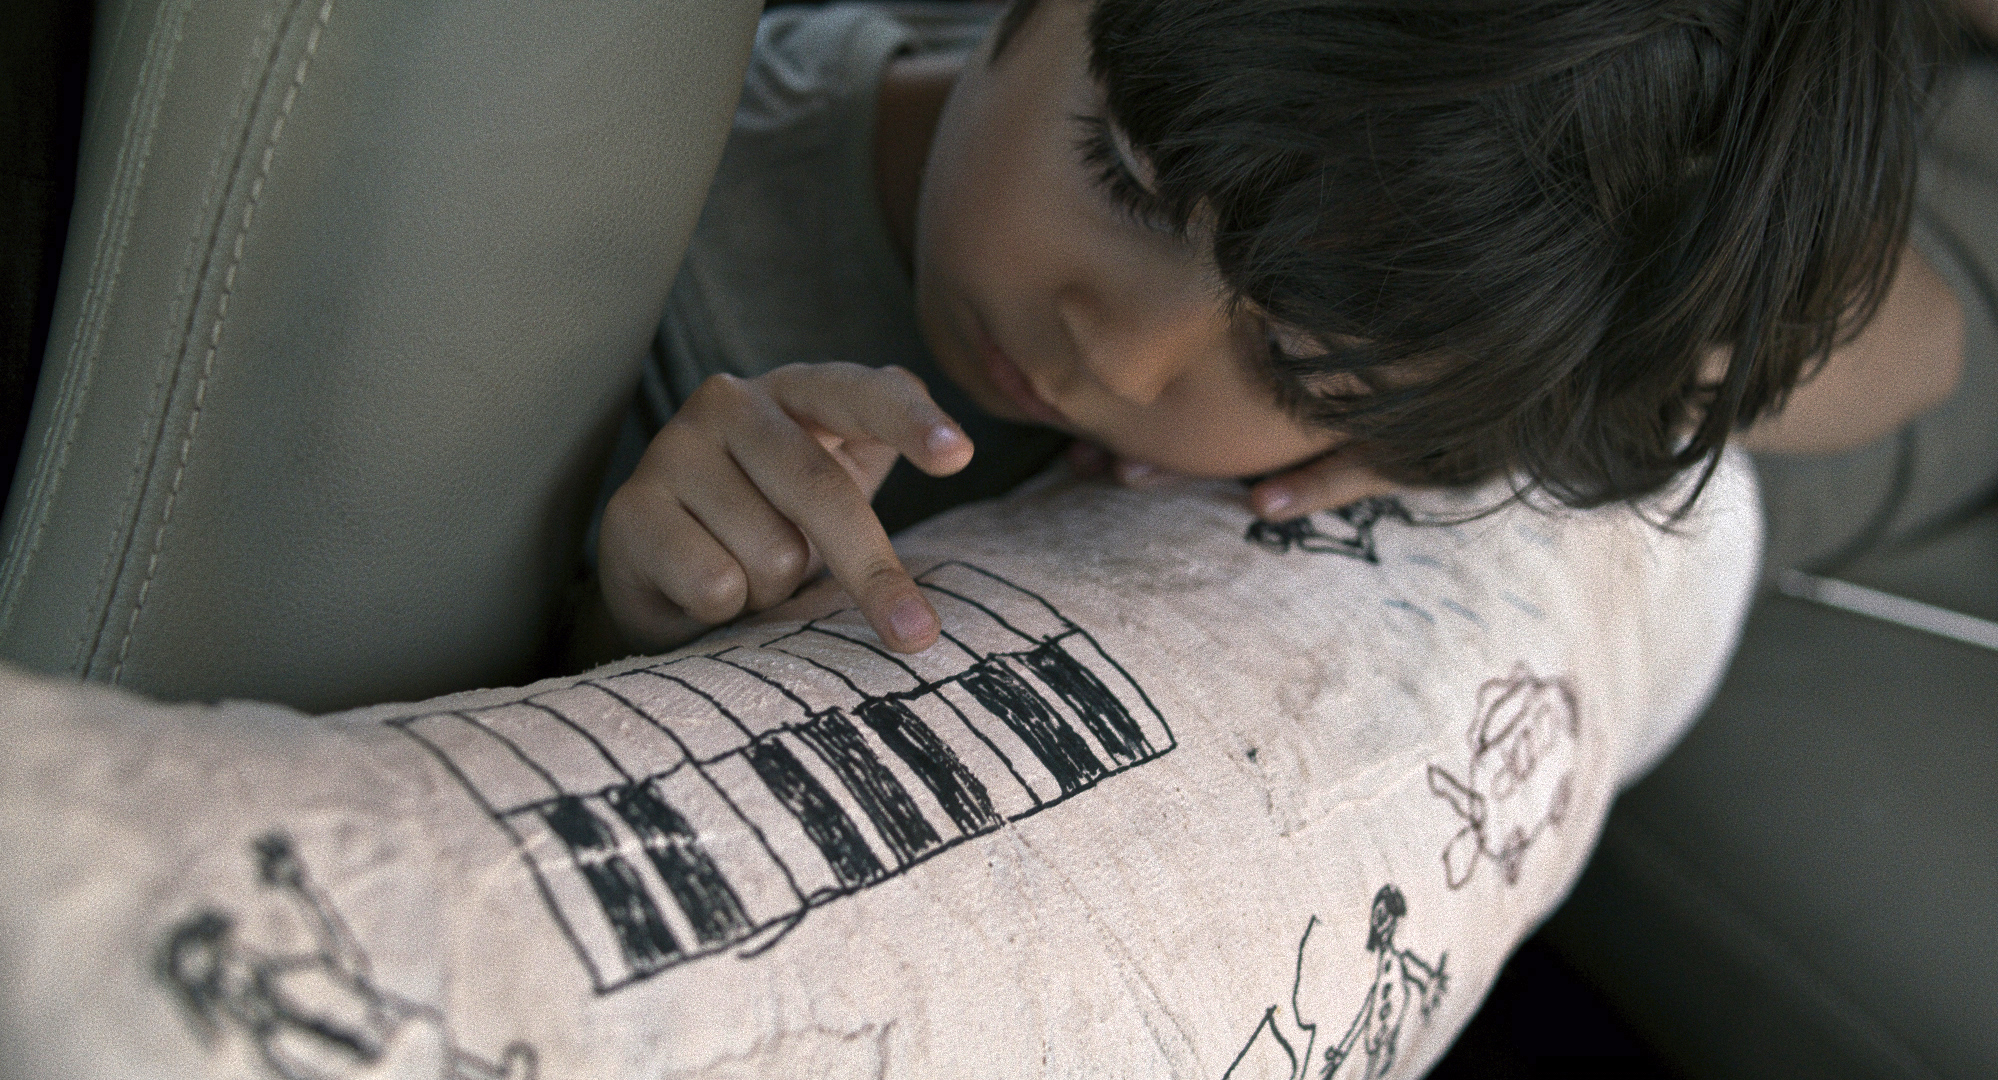 Cena do filme Pegando a Estrada. A foto mostra de perto um menino pequeno apoiado sobre uma perna engessada, na qual se vêem alguns desenhos. Ele apoia seus dedos sobre a imagem de teclas de um piano.